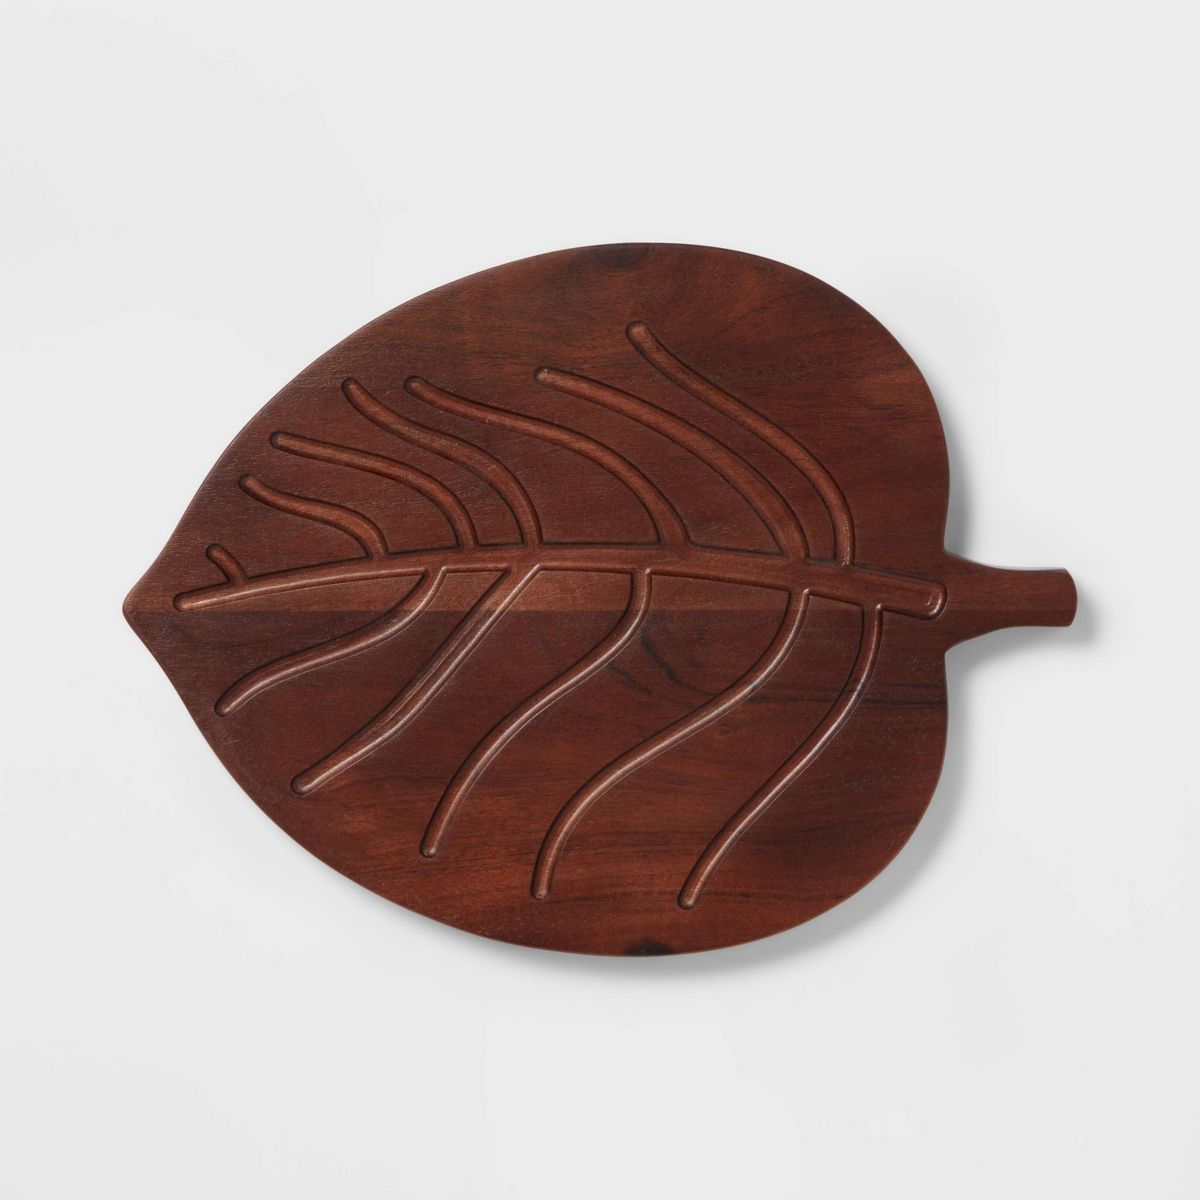 Wooden Oak Leaf Shape Serving Board with Handle Dark Brown - Threshold™ | Target